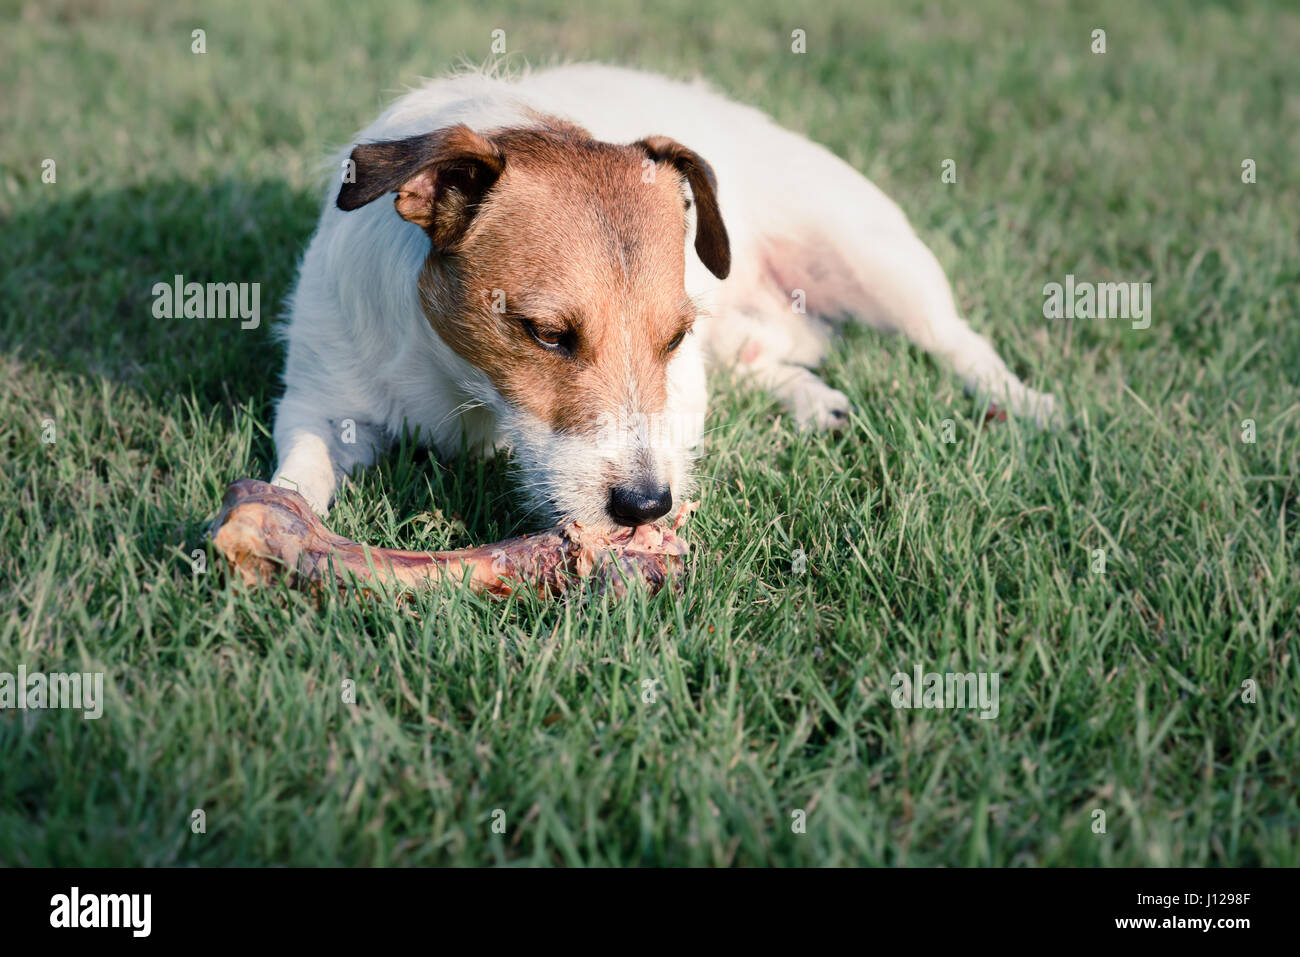 Hundeknochen Sie essen Doggy liegend auf dem grünen Rasen Stockfotografie -  Alamy